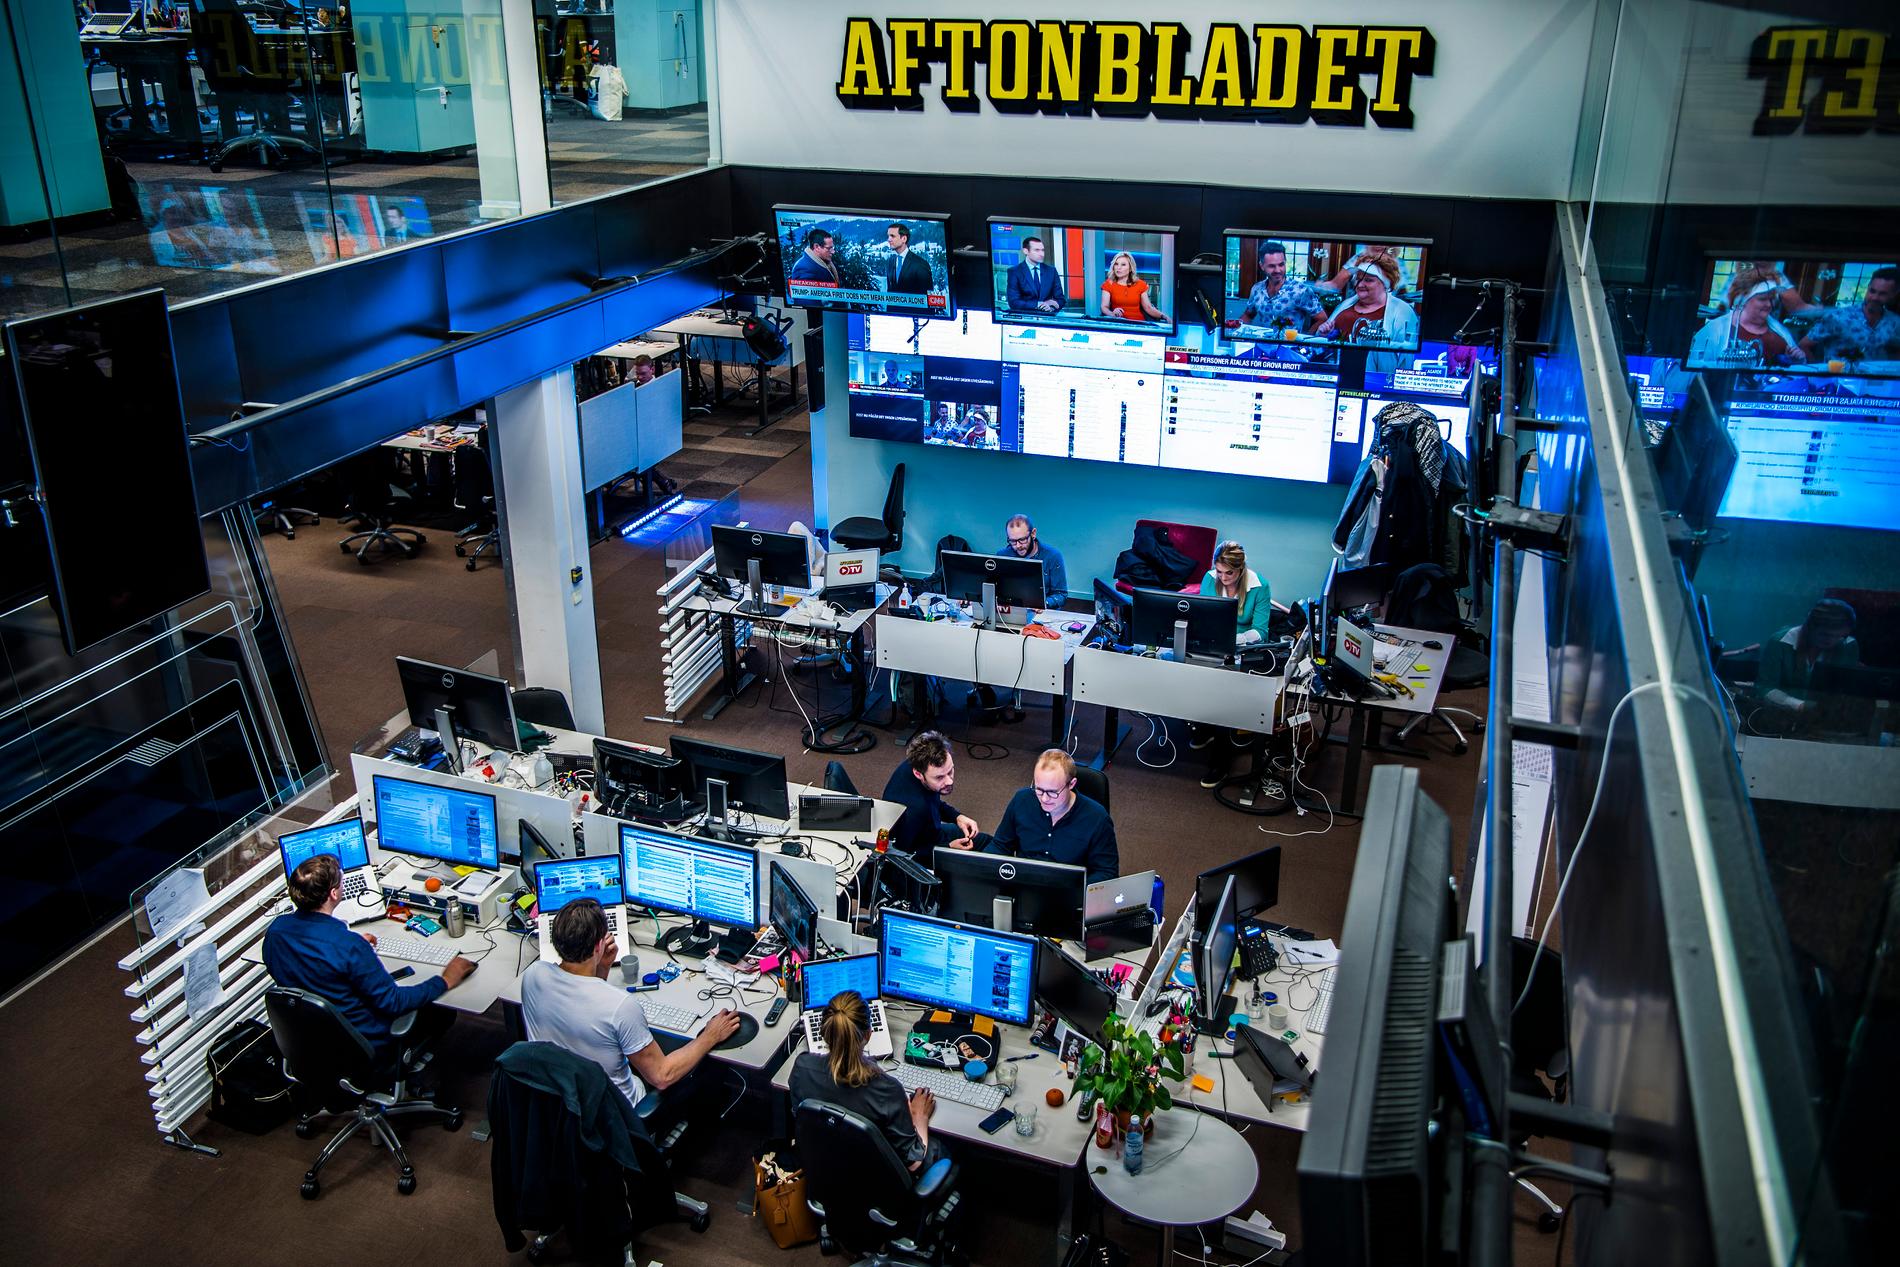 Aftonbladets räckvidd och position är helt centrala för Schibsteds digitala ekosystem i Sverige, äger Schibsteds Sverigechef Raoul Grünthal.